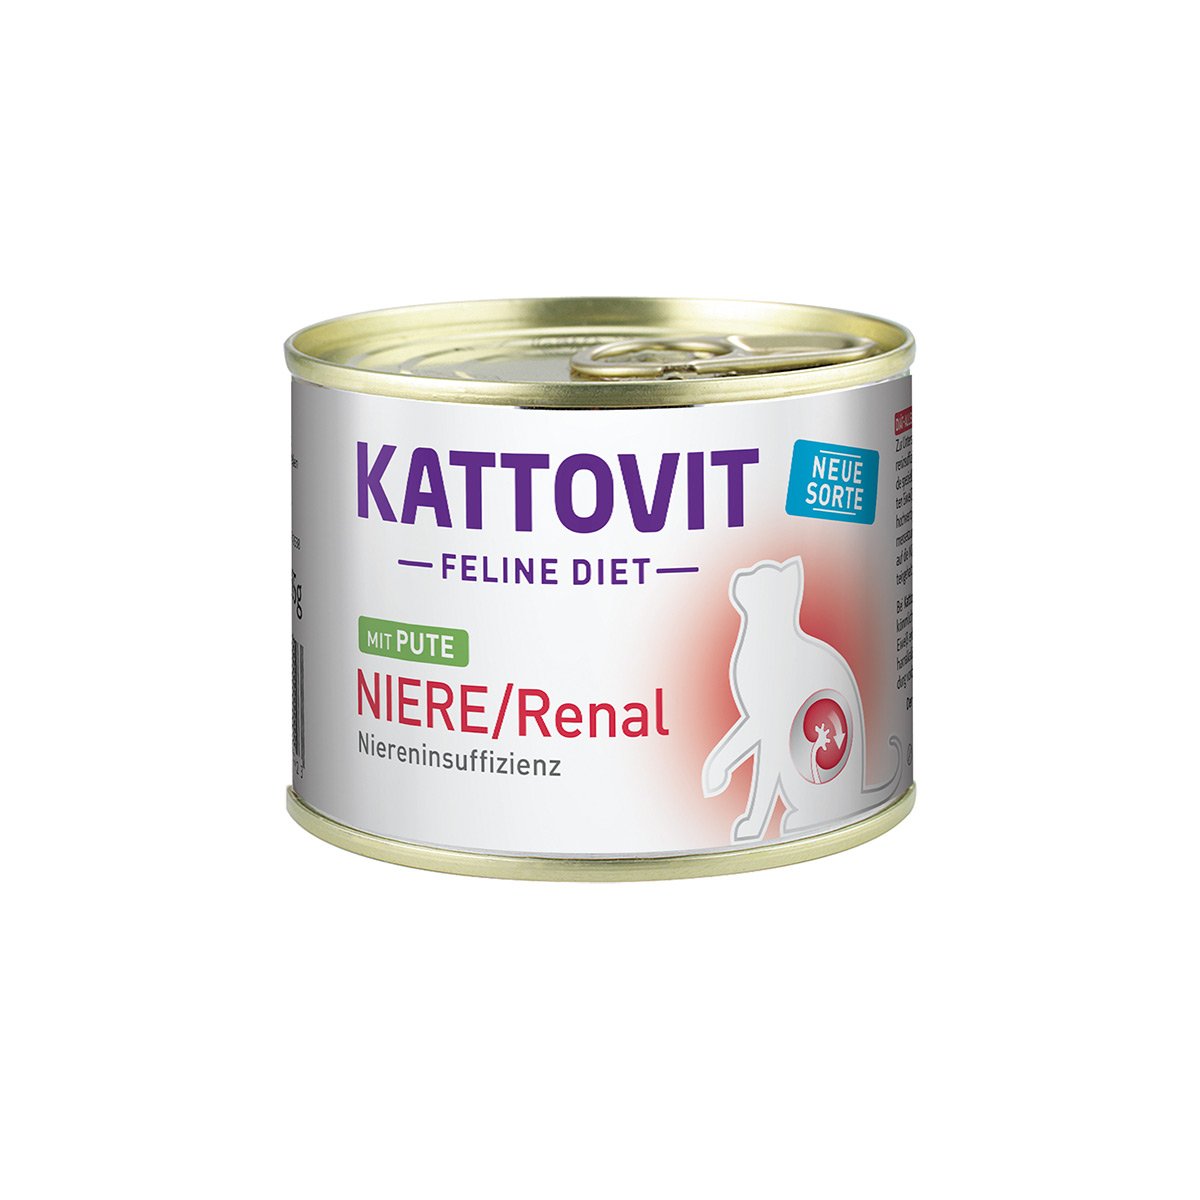 Kattovit Feline Diet Niere Renal Pute 12x185g von Kattovit